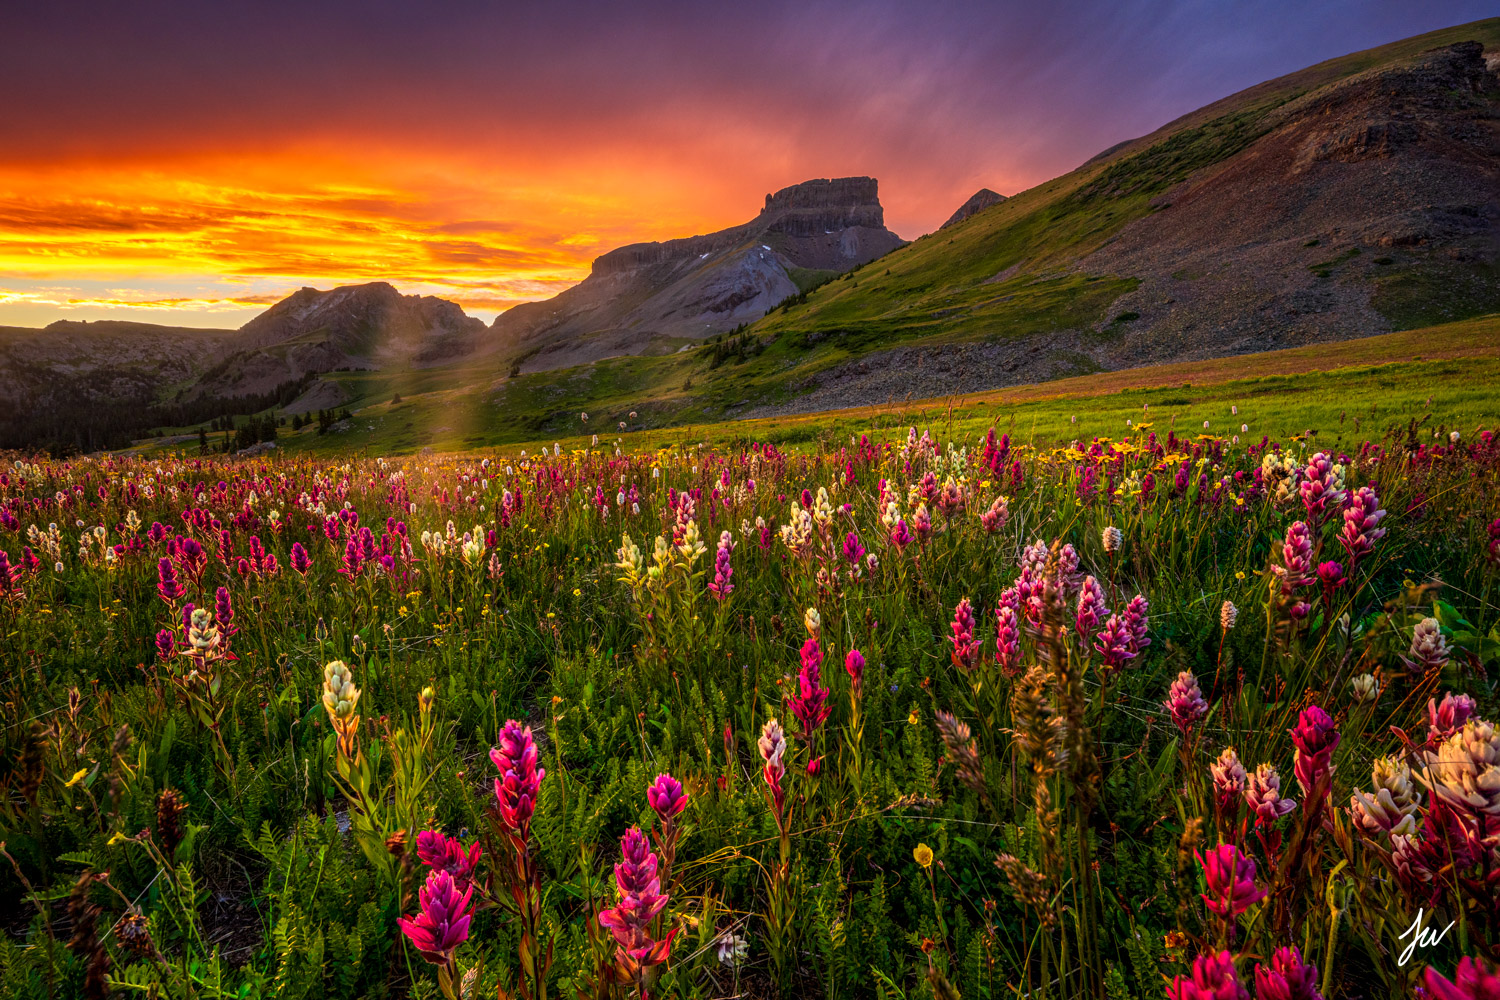 San Juan Sunset with Colorado Wildflowers.